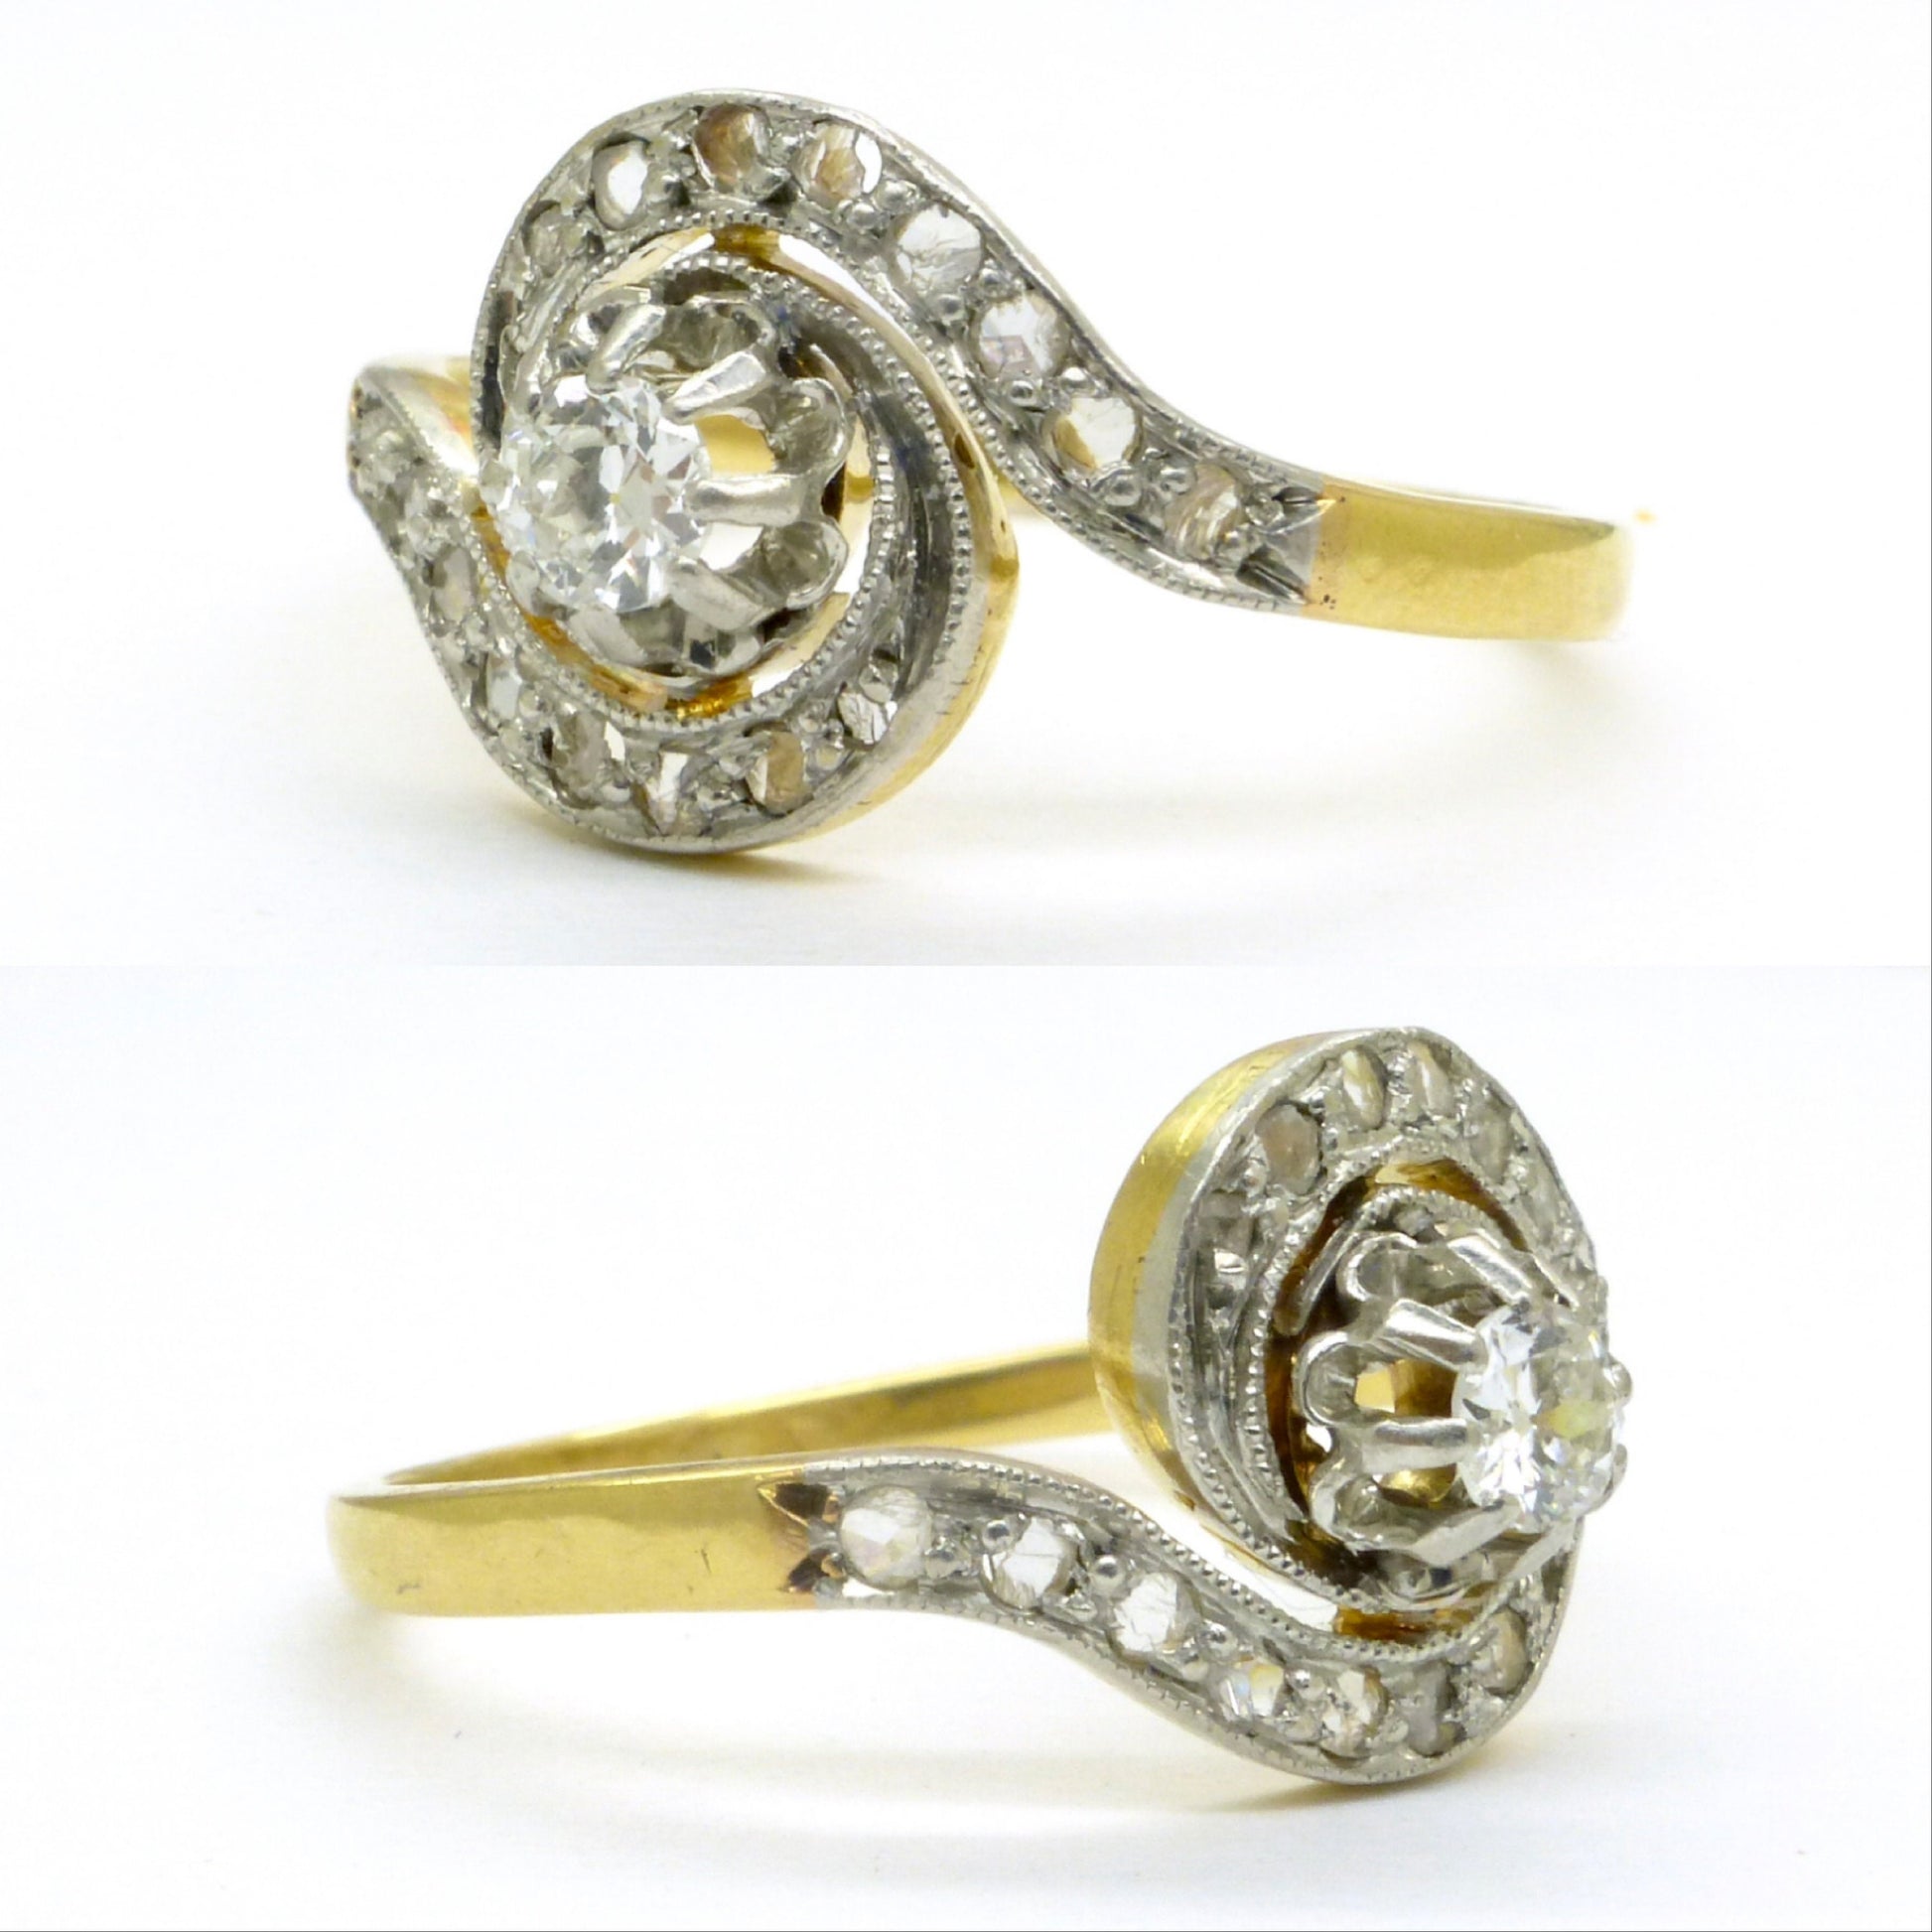 Antique French 18ct diamond tourbillon solitaire ring ~ Edwardian - Belle Èpoque c1900-1910